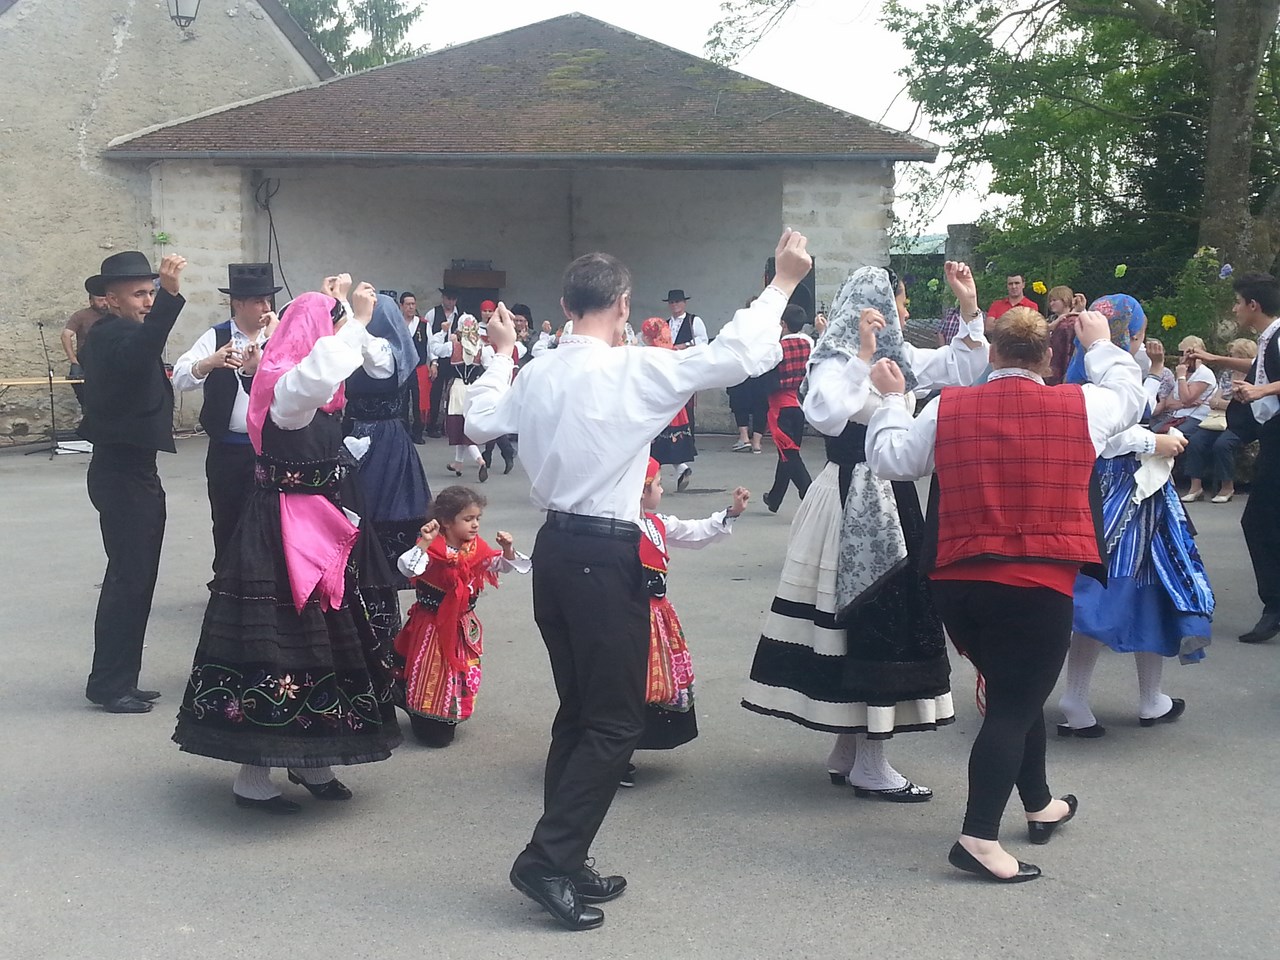 Danse sur la place du village